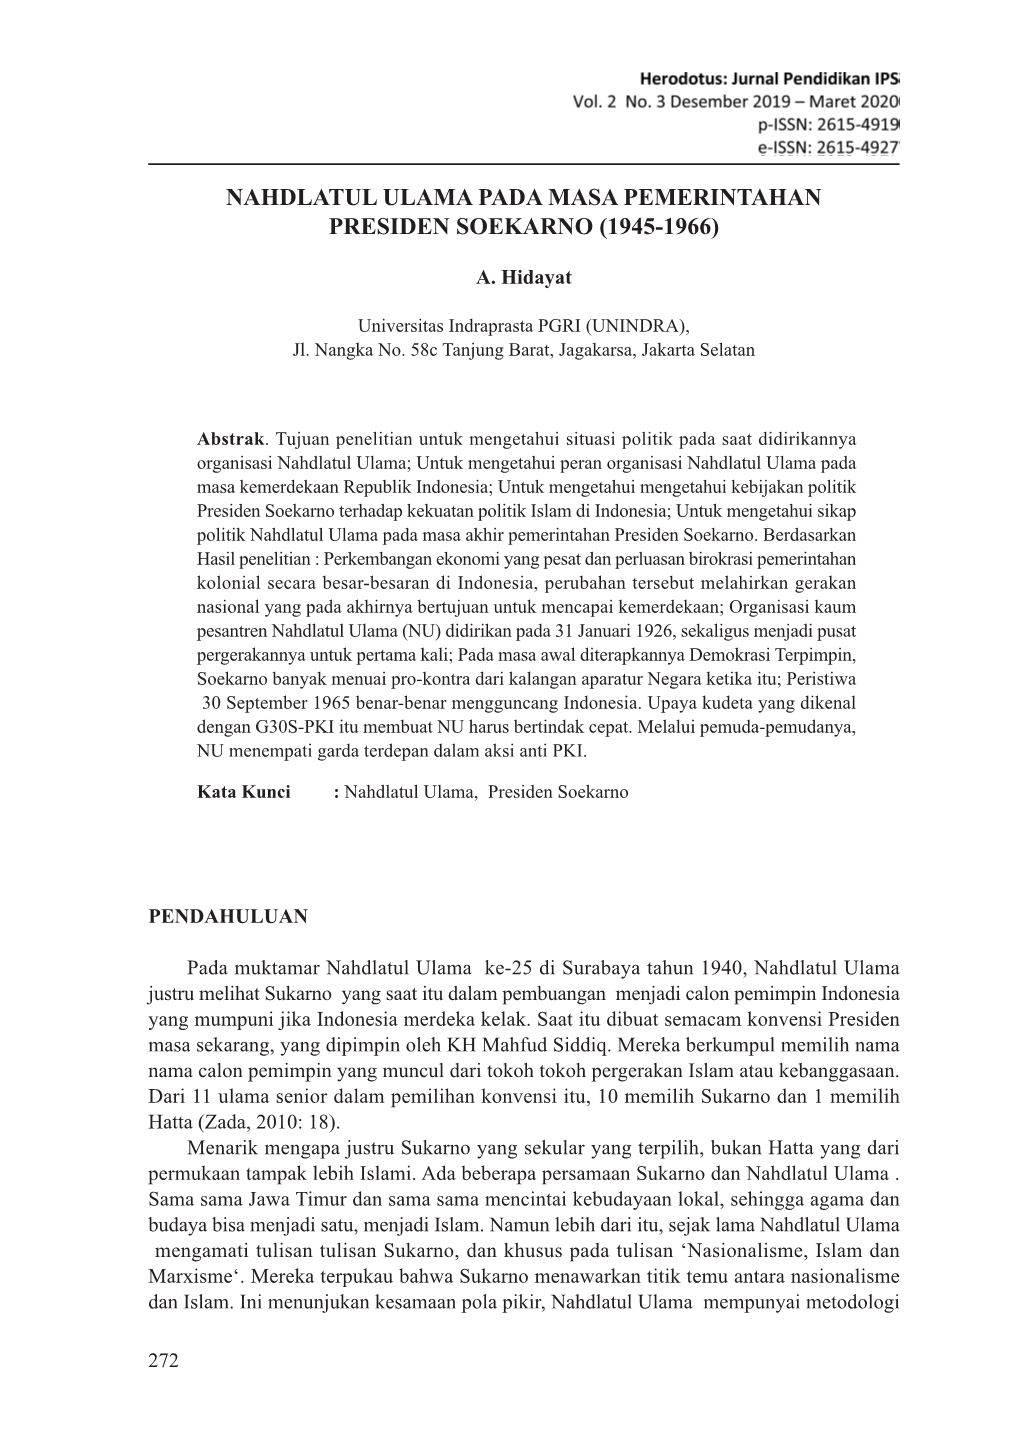 Nahdlatul Ulama Pada Masa Pemerintahan Presiden Soekarno (1945-1966)